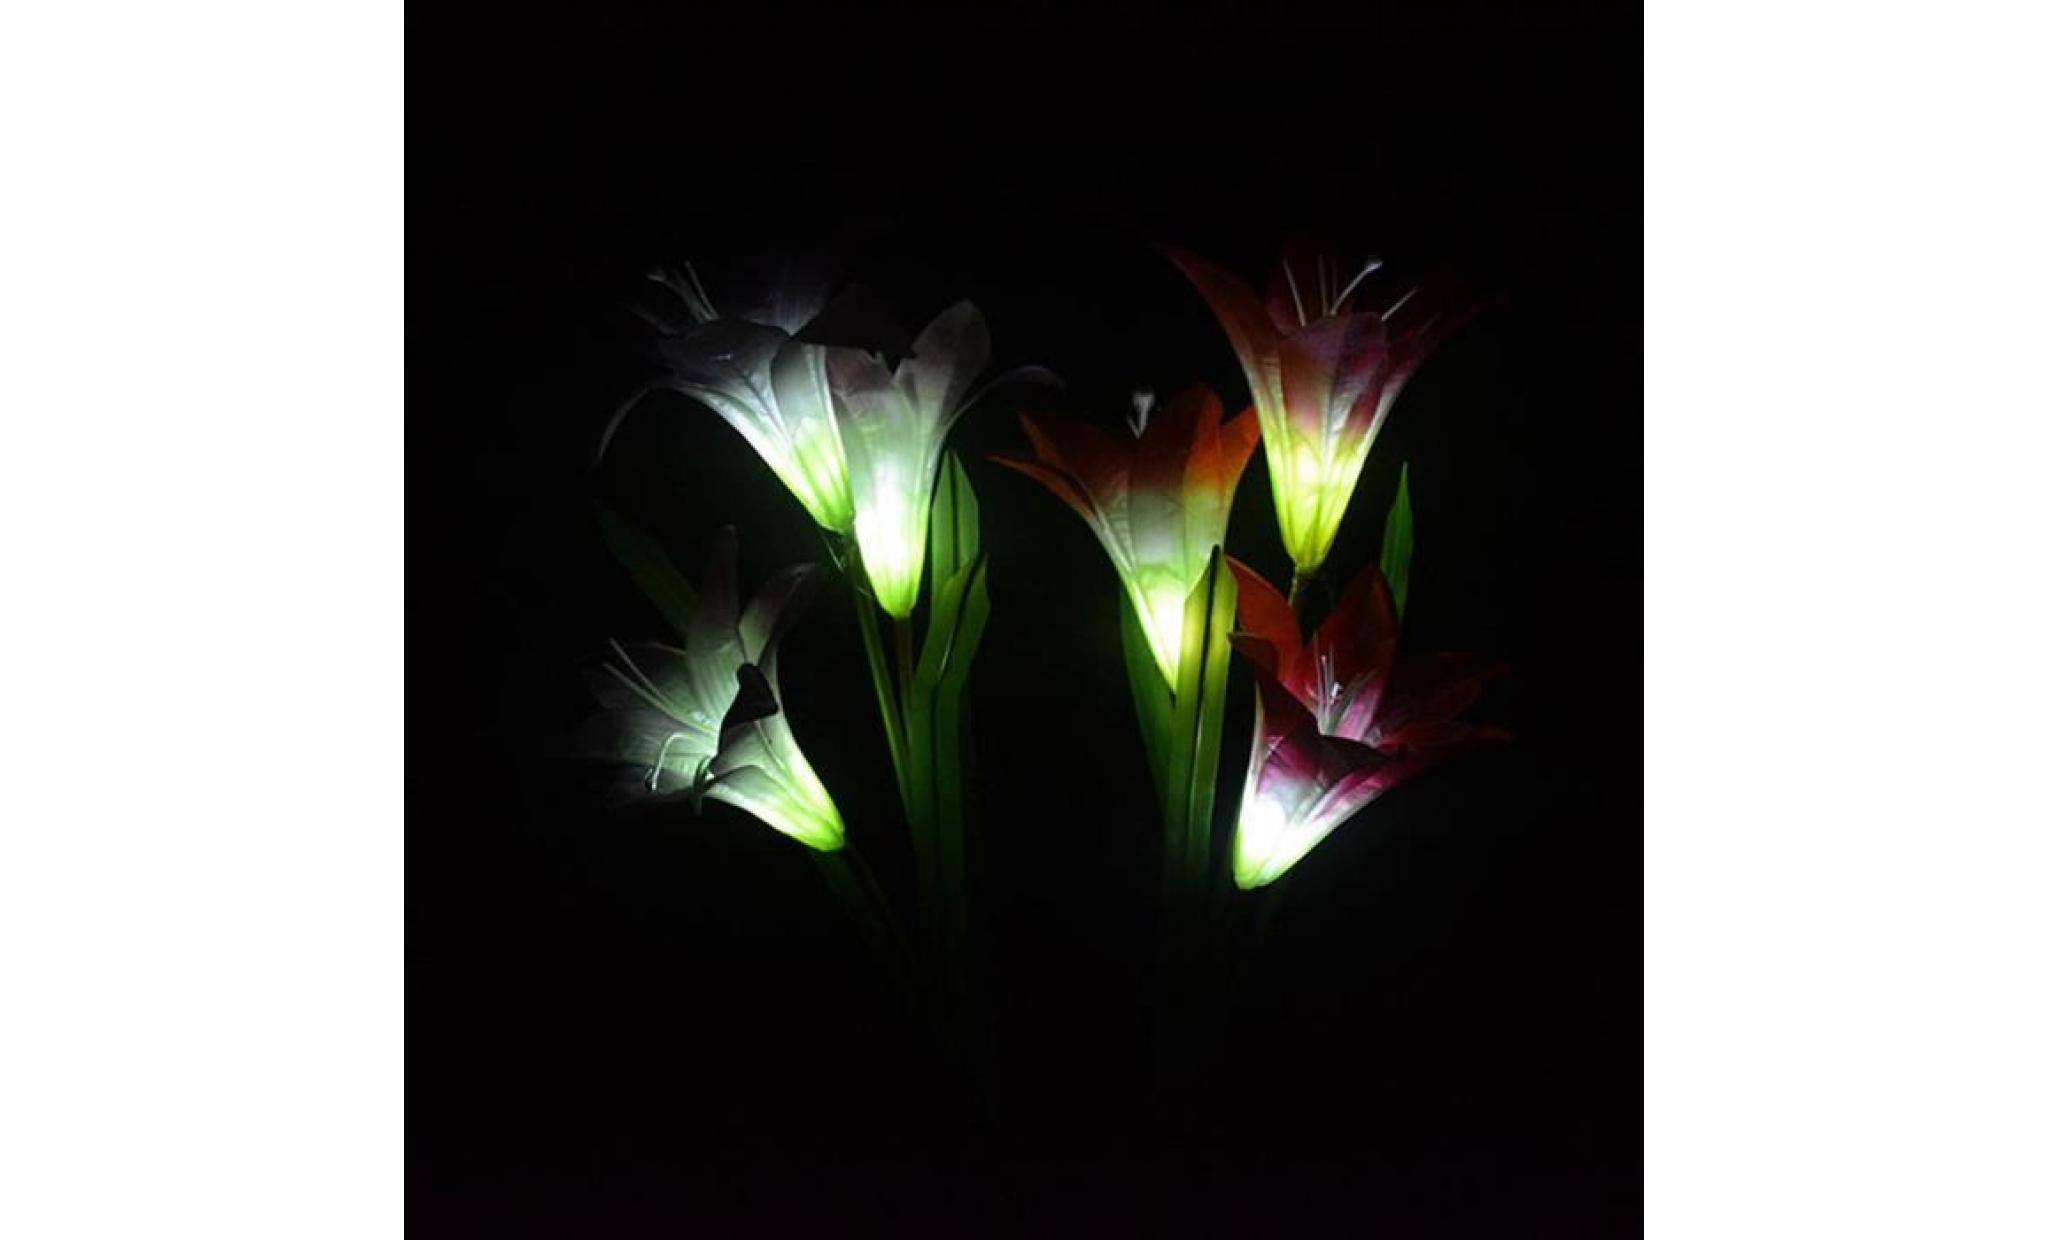 wxx70508219rd@3 têtes lanterne solaire led décoration extérieure lampe de jardin 3 fleurs lily lampe rouge pas cher